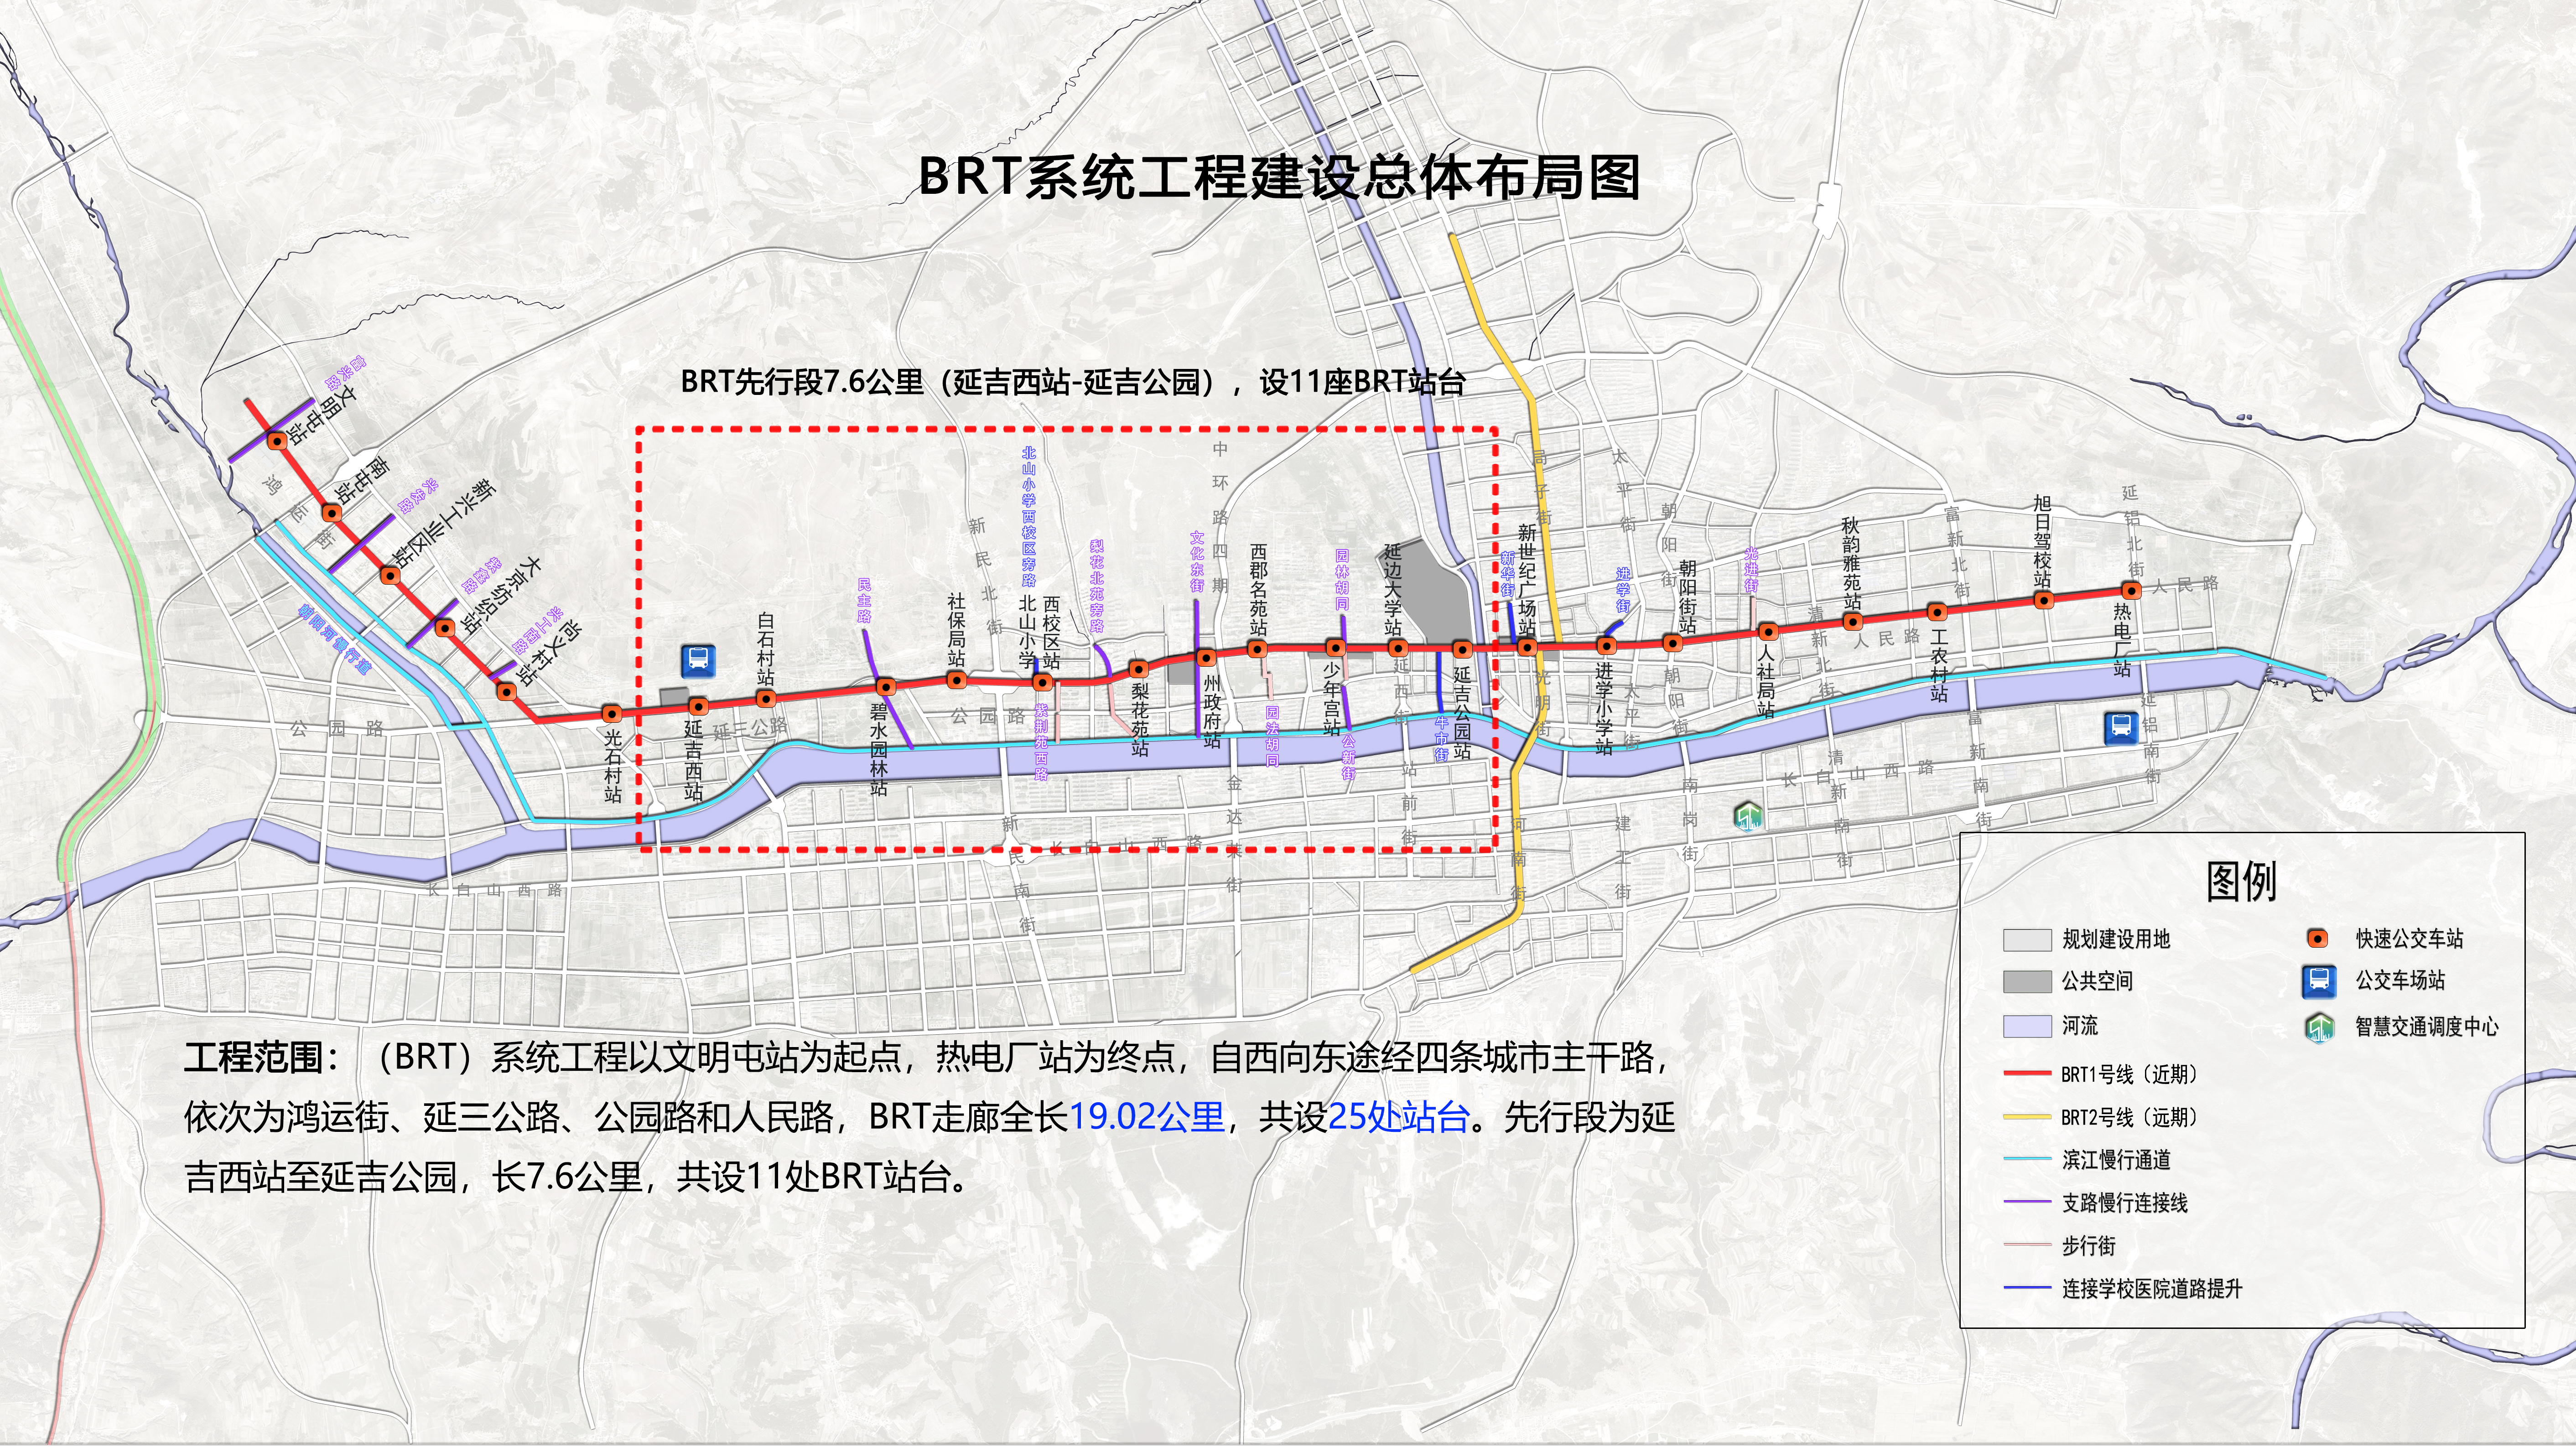 1、BRT及沿线总平面布置图.jpg